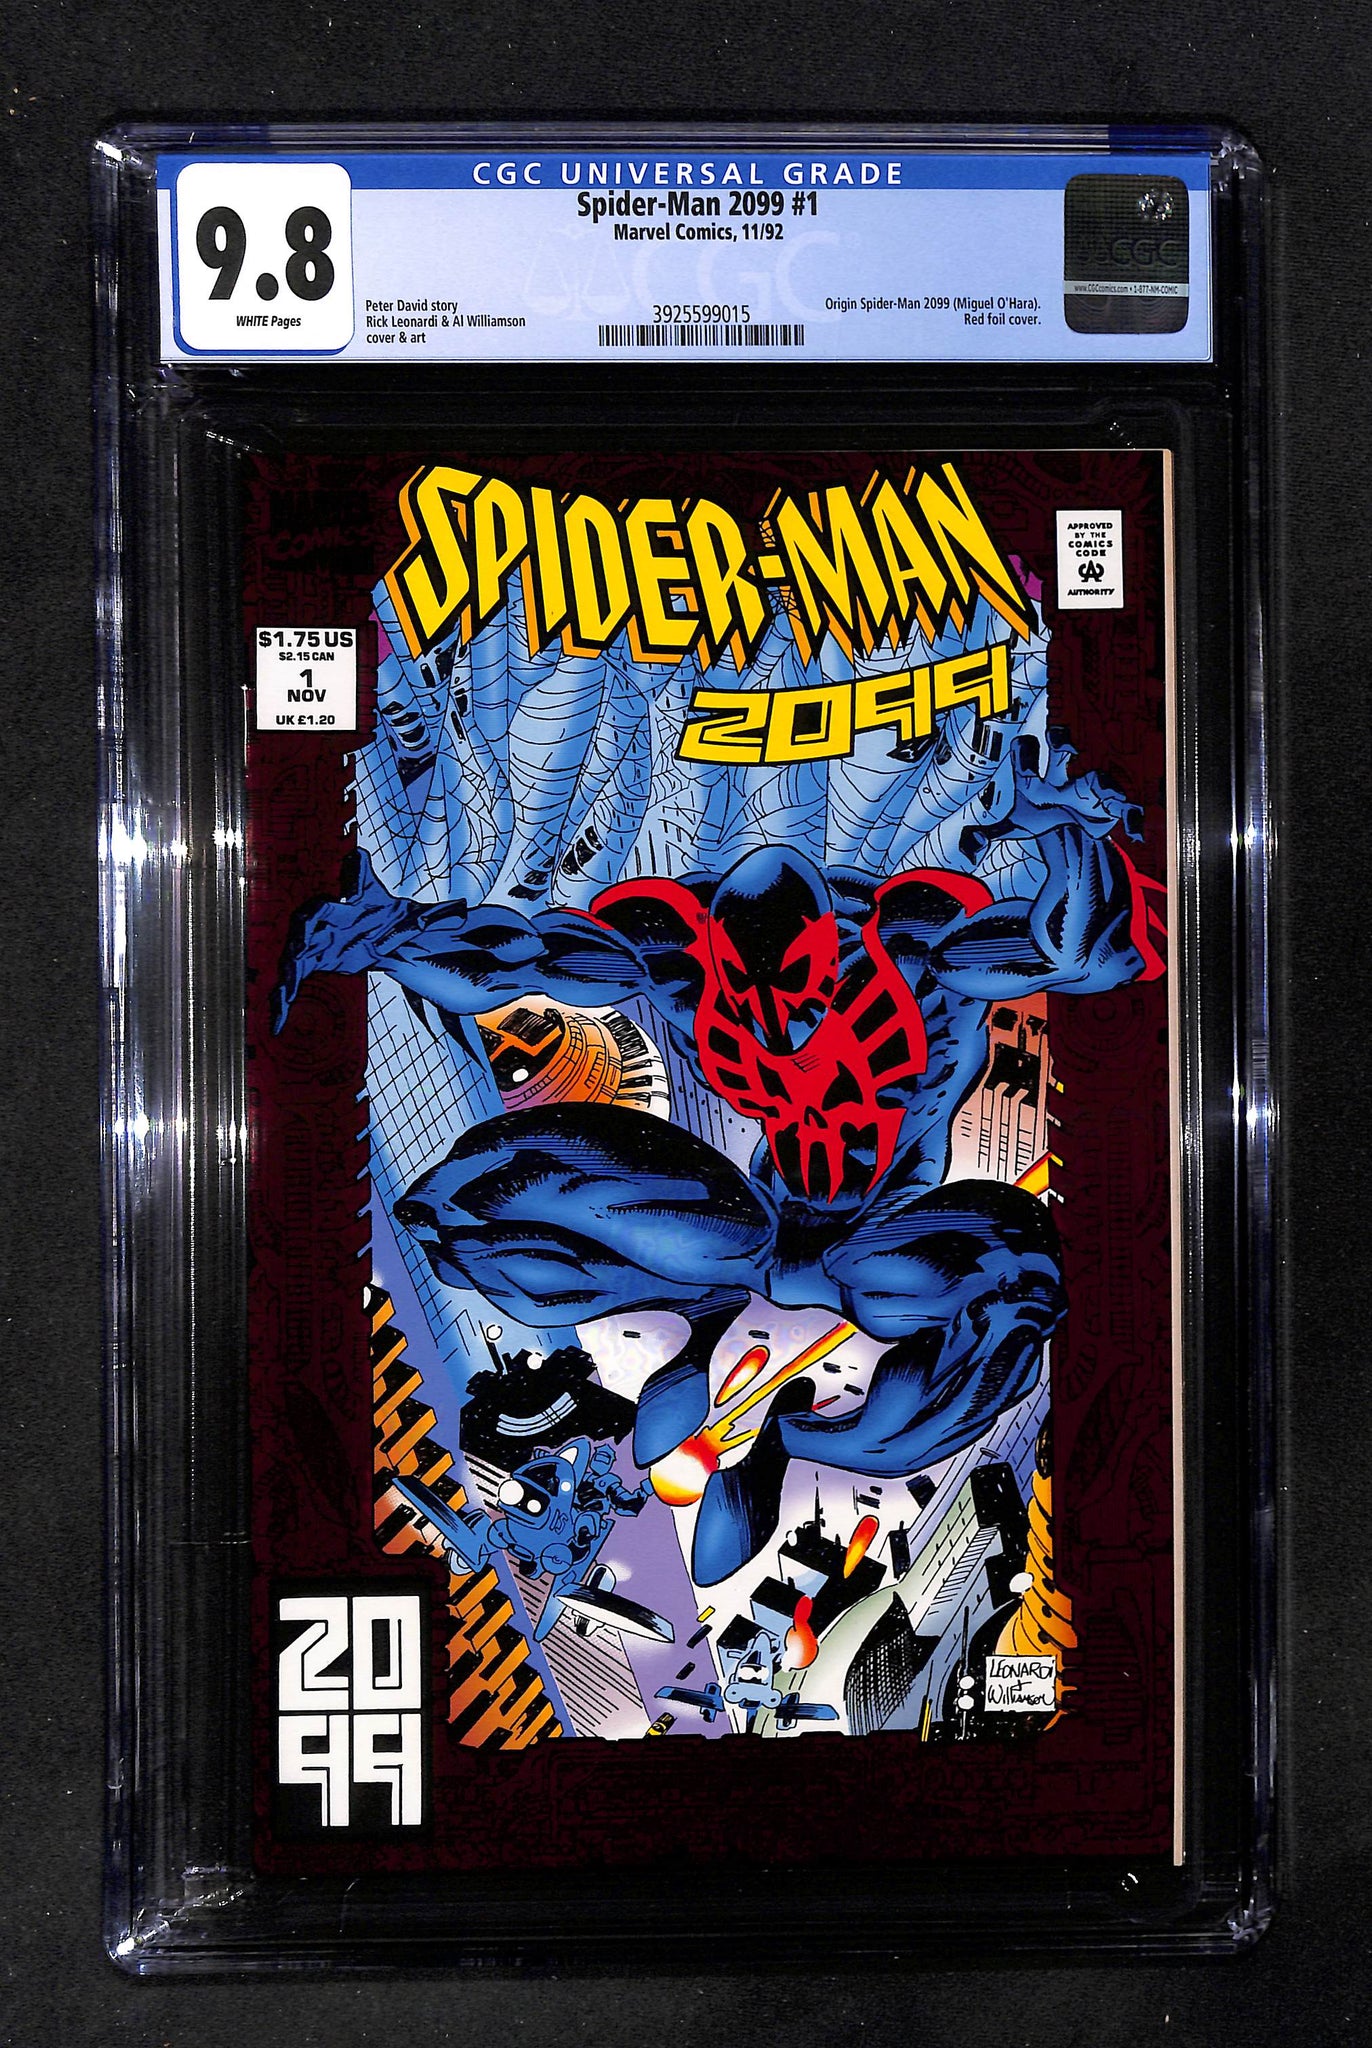 Spider-Man 2099 #1 CGC 9.8 Origin Spider-Man 2099